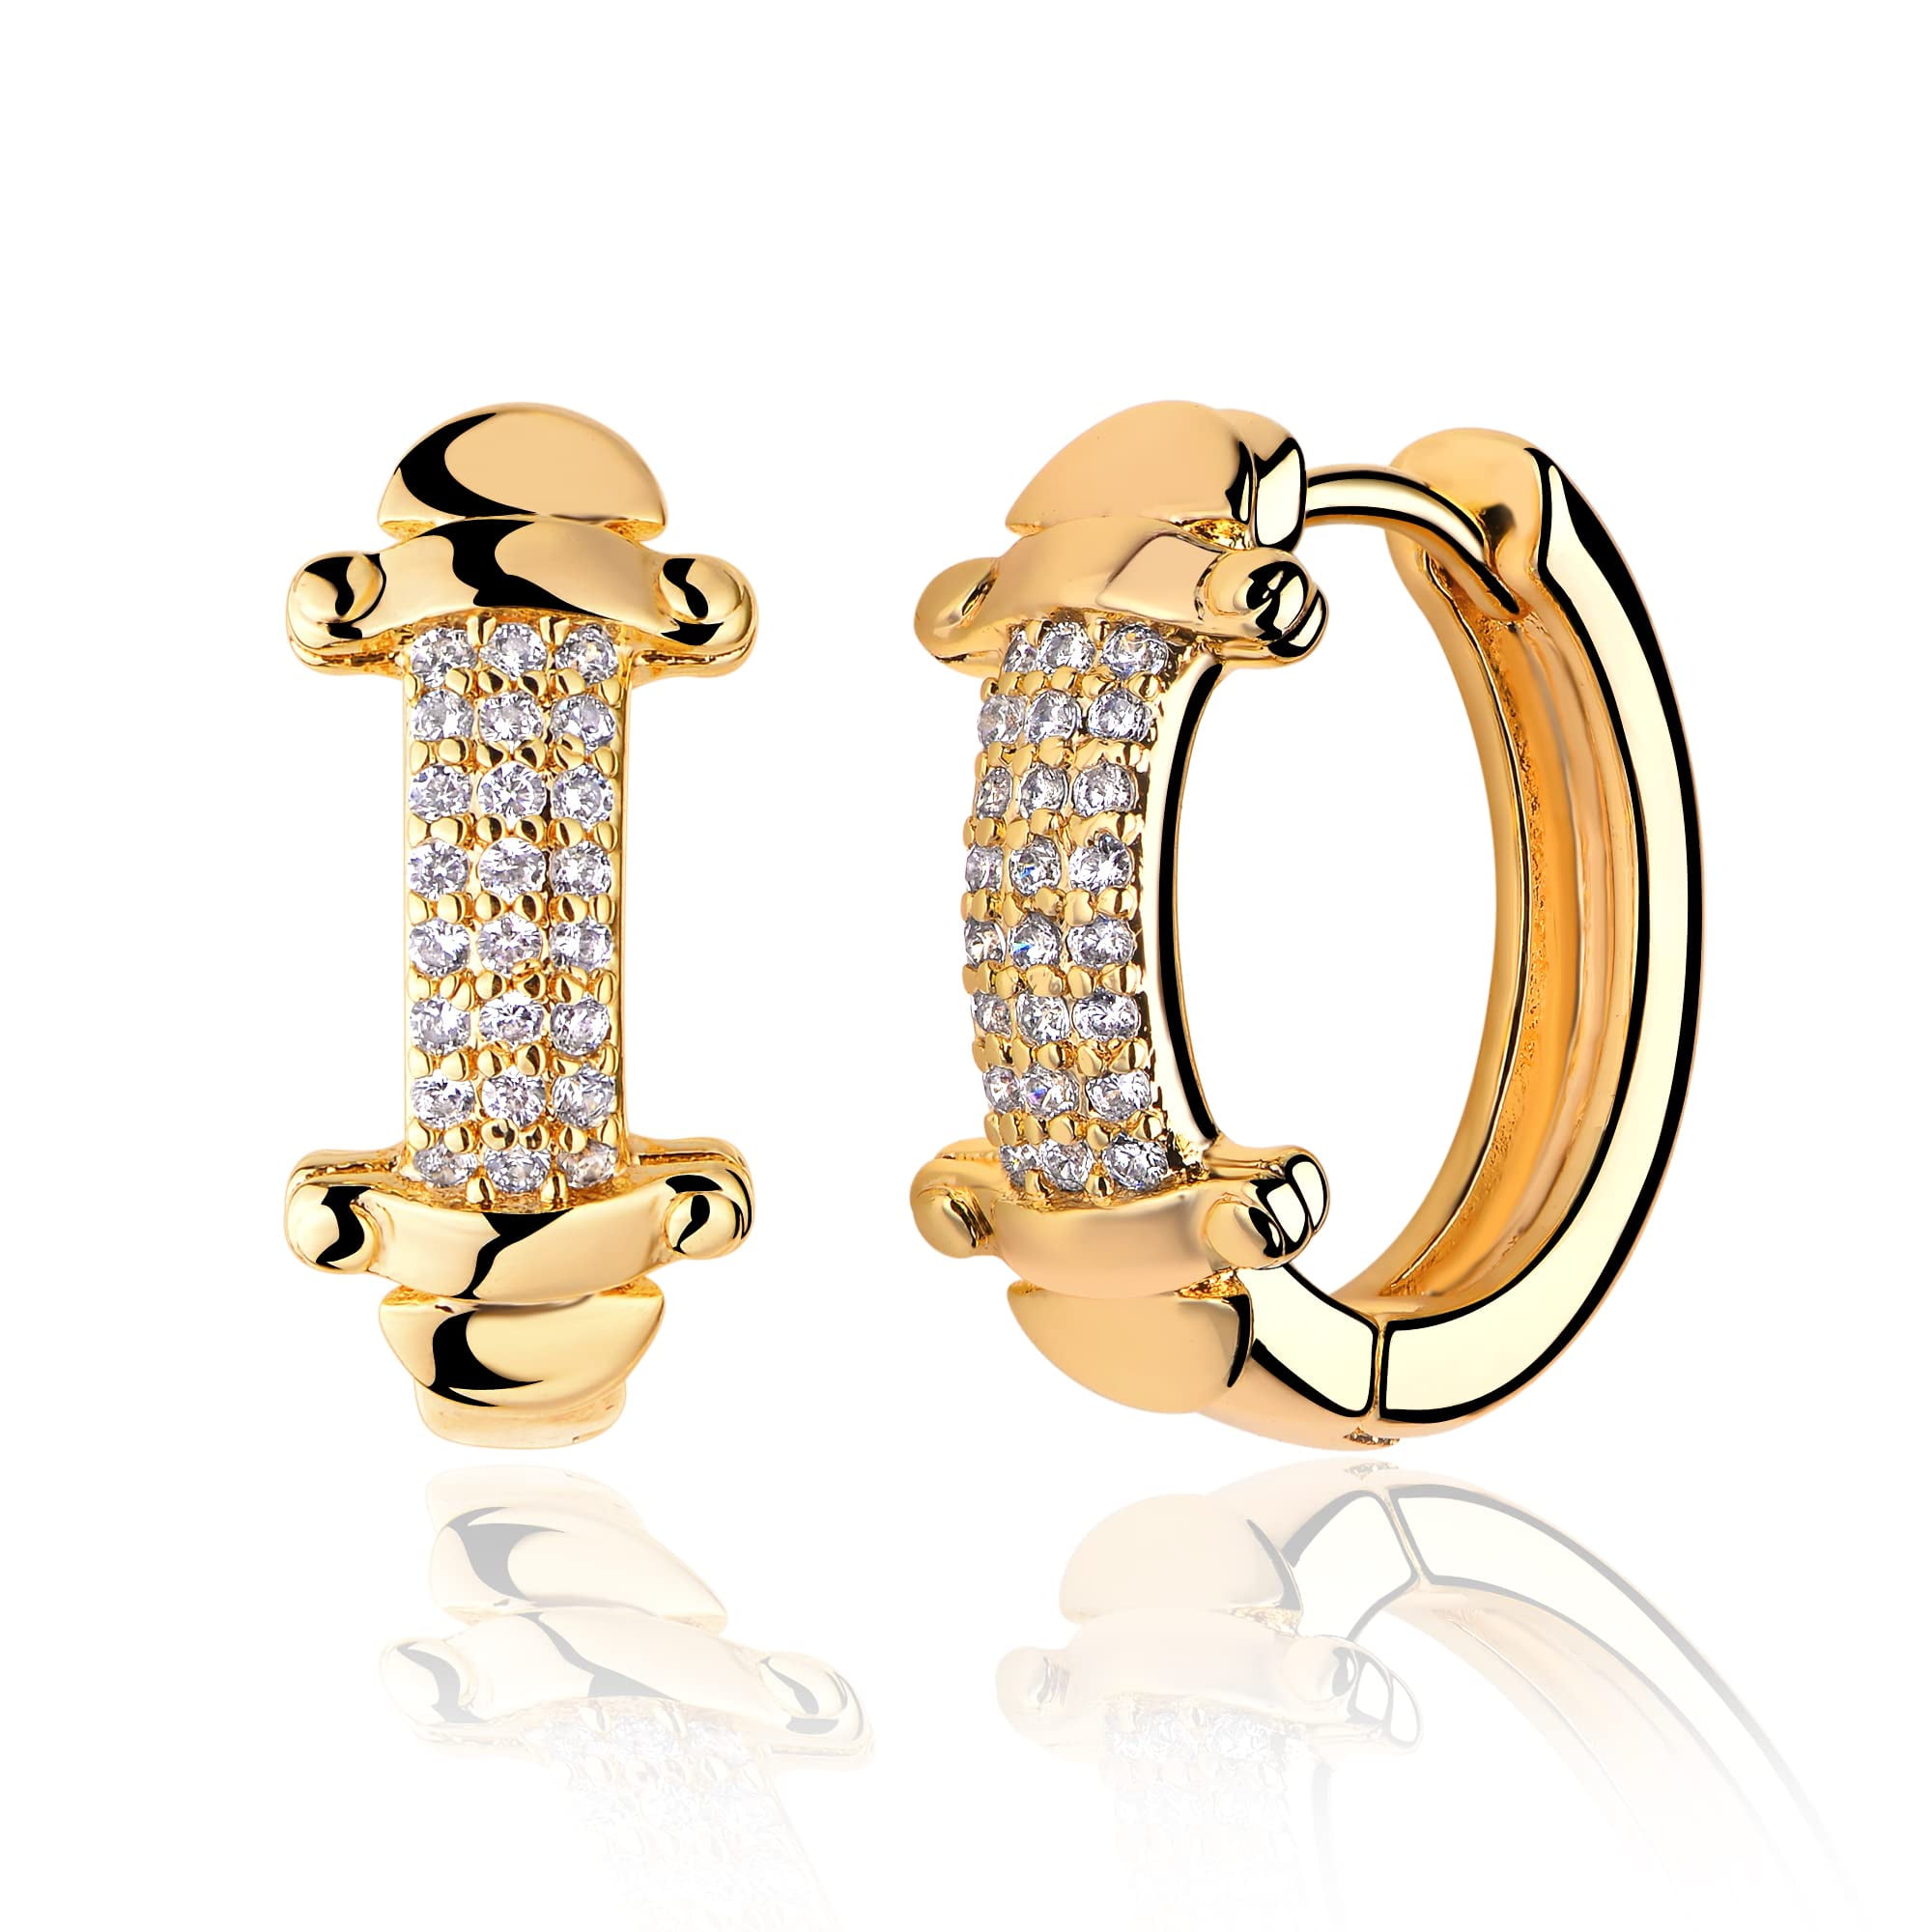 Valloey Rover Huggie Hoop Earrings Gold Cubic Zirconia Ball Circle Hoop Earrings 14K Gold Plated Dainty Huggie Hoops for Women Jewelry Gift 